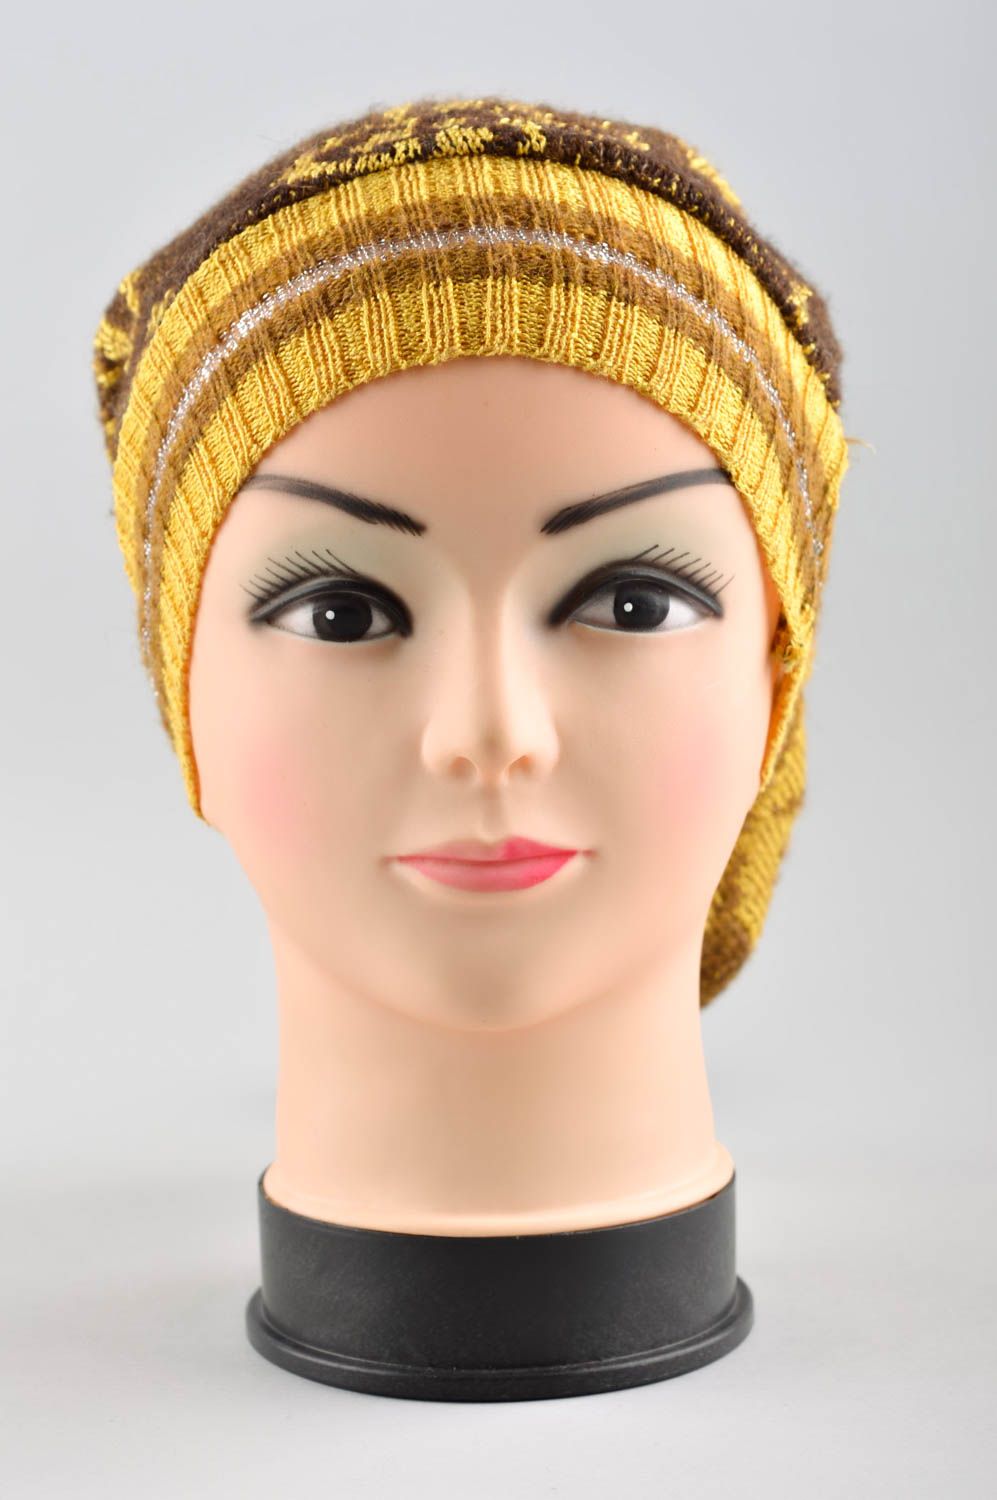 Зимняя шапка ручной работы зимняя женская шапка головной убор стильный авторский фото 1